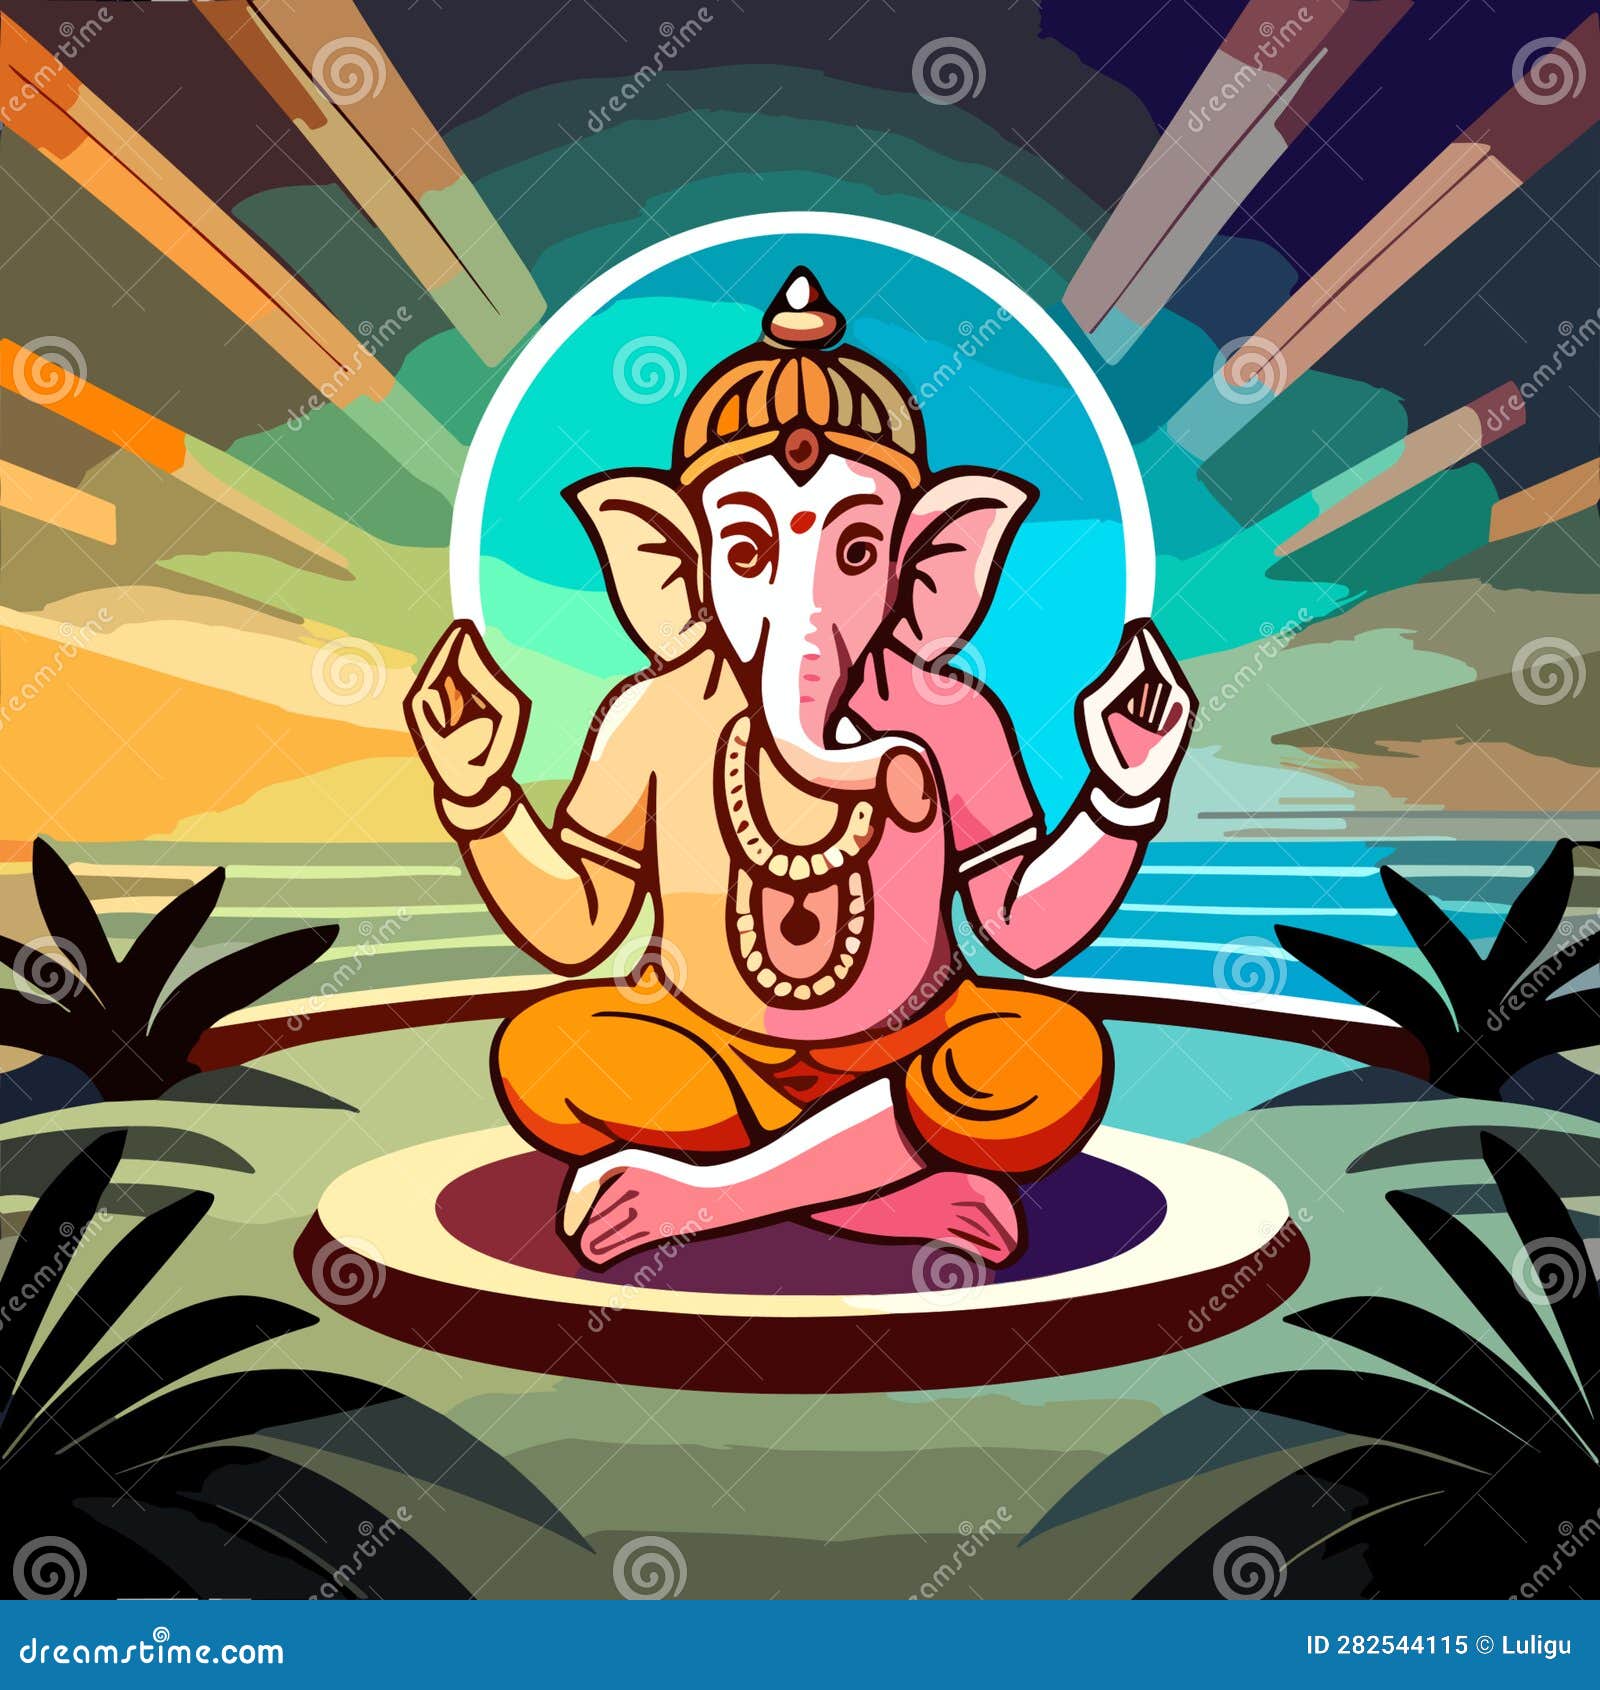 Ganesha Fridge magnet - Athulyaa